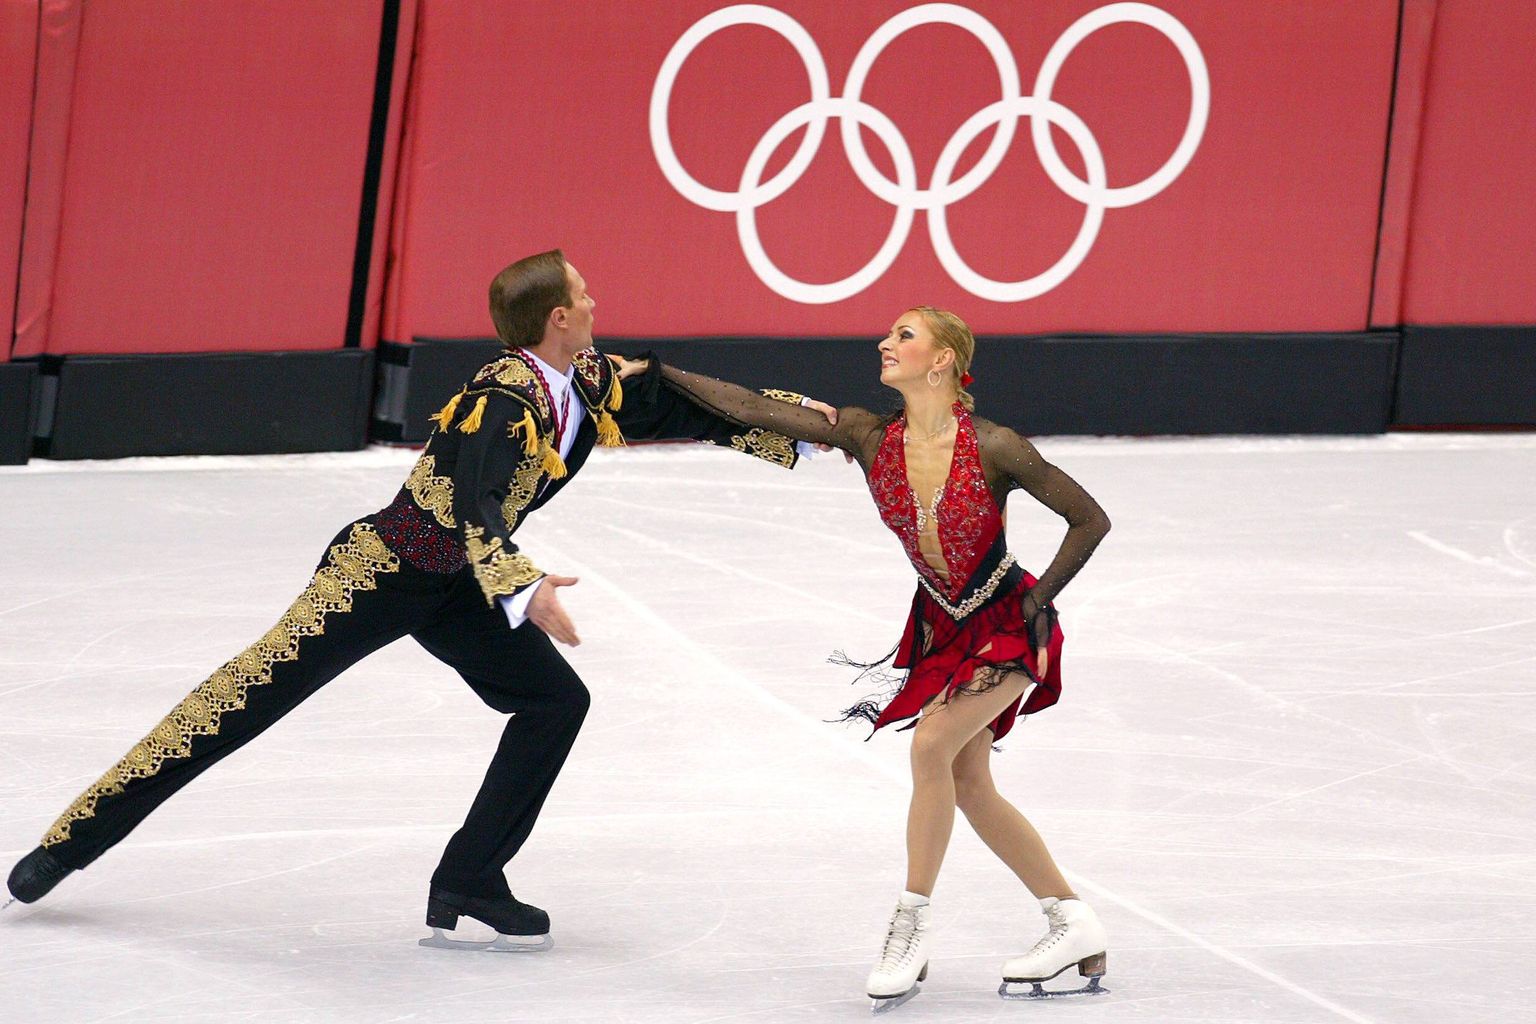 Roman Kostomarov ja Tatjana Navka 2006. aasta Torino olümpial.